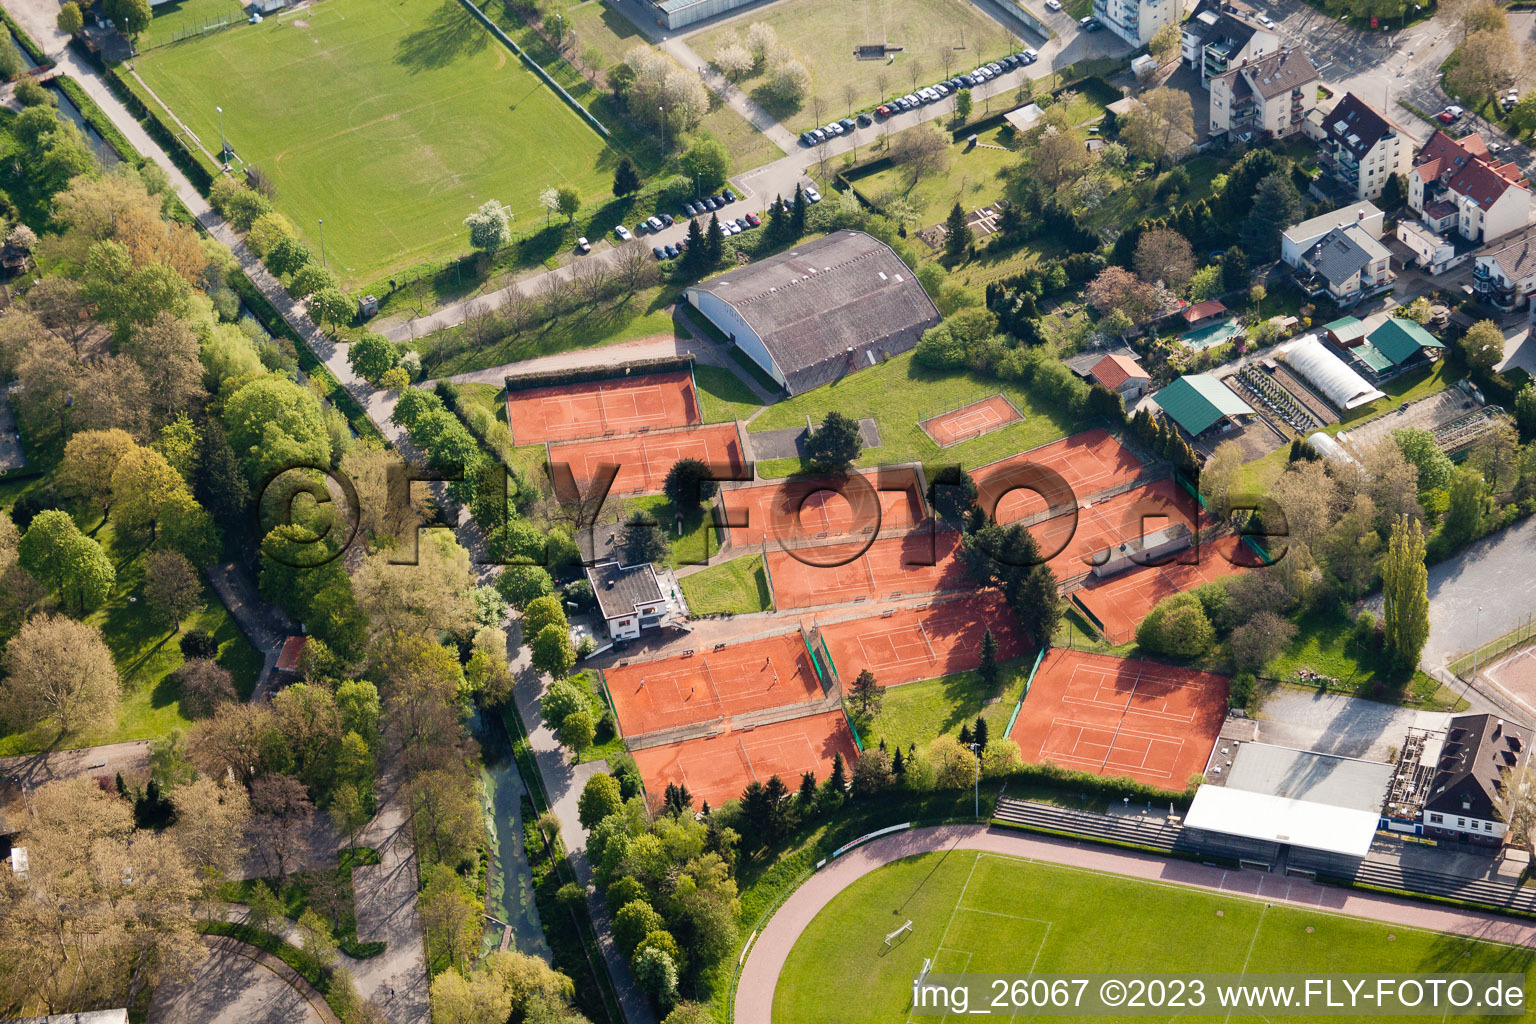 Vue aérienne de Club de tennis au stade Turmberg à le quartier Durlach in Karlsruhe dans le département Bade-Wurtemberg, Allemagne